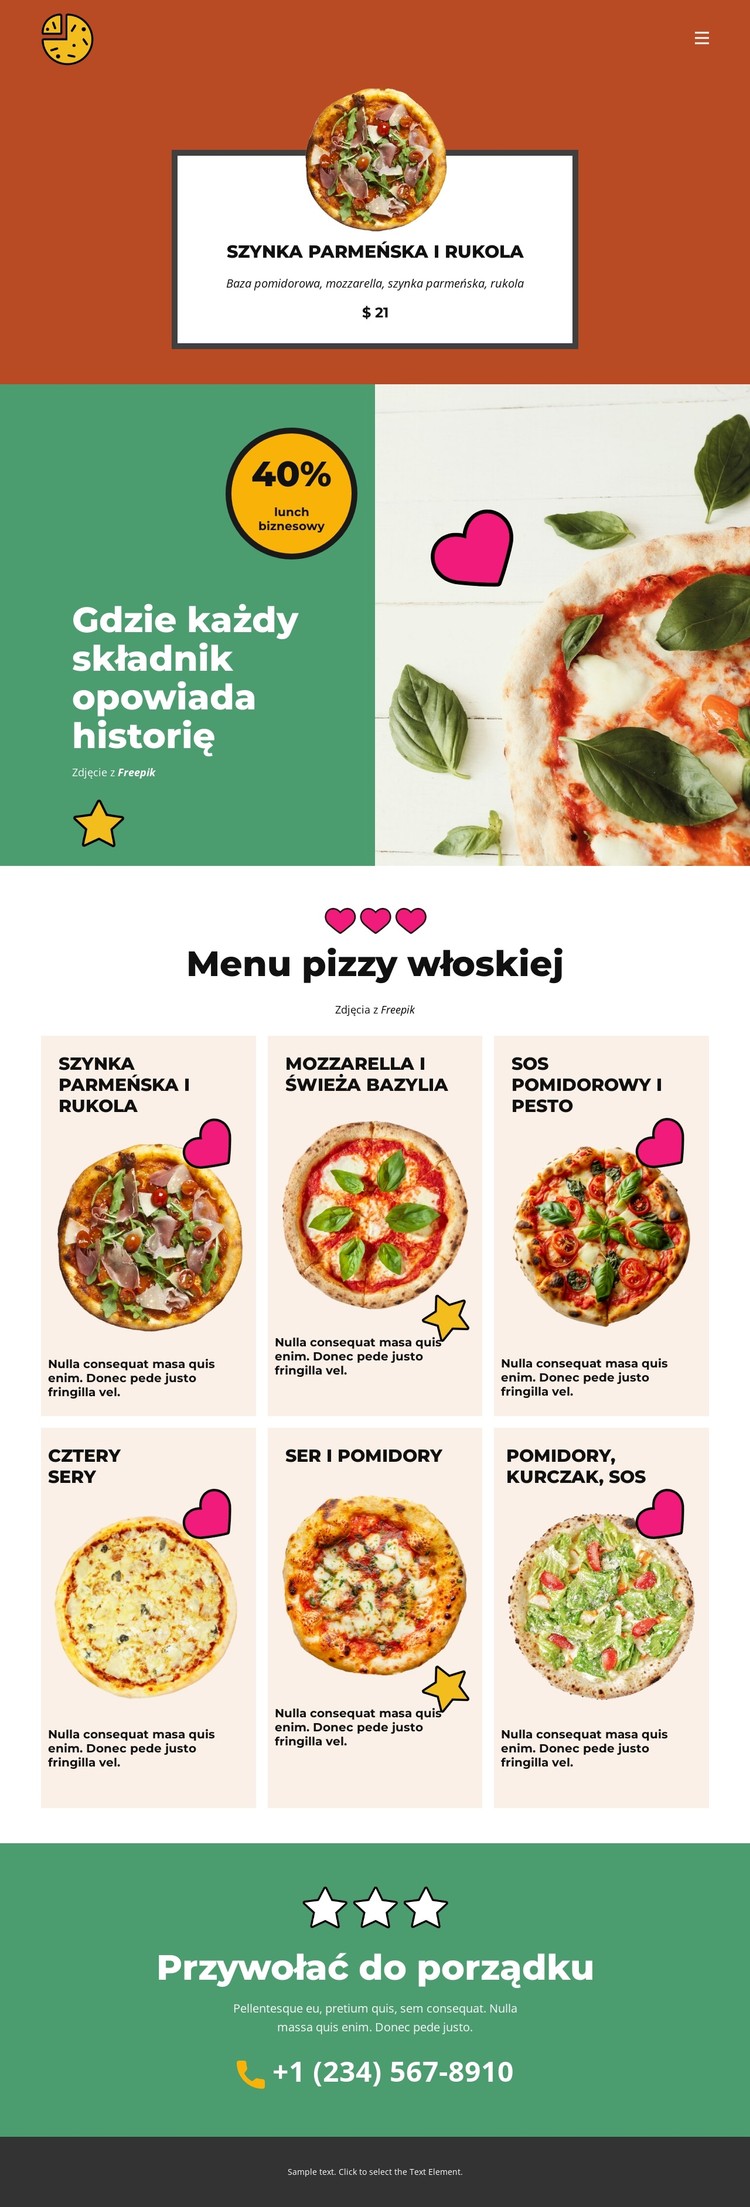 Fun Facts about Pizza Szablon CSS